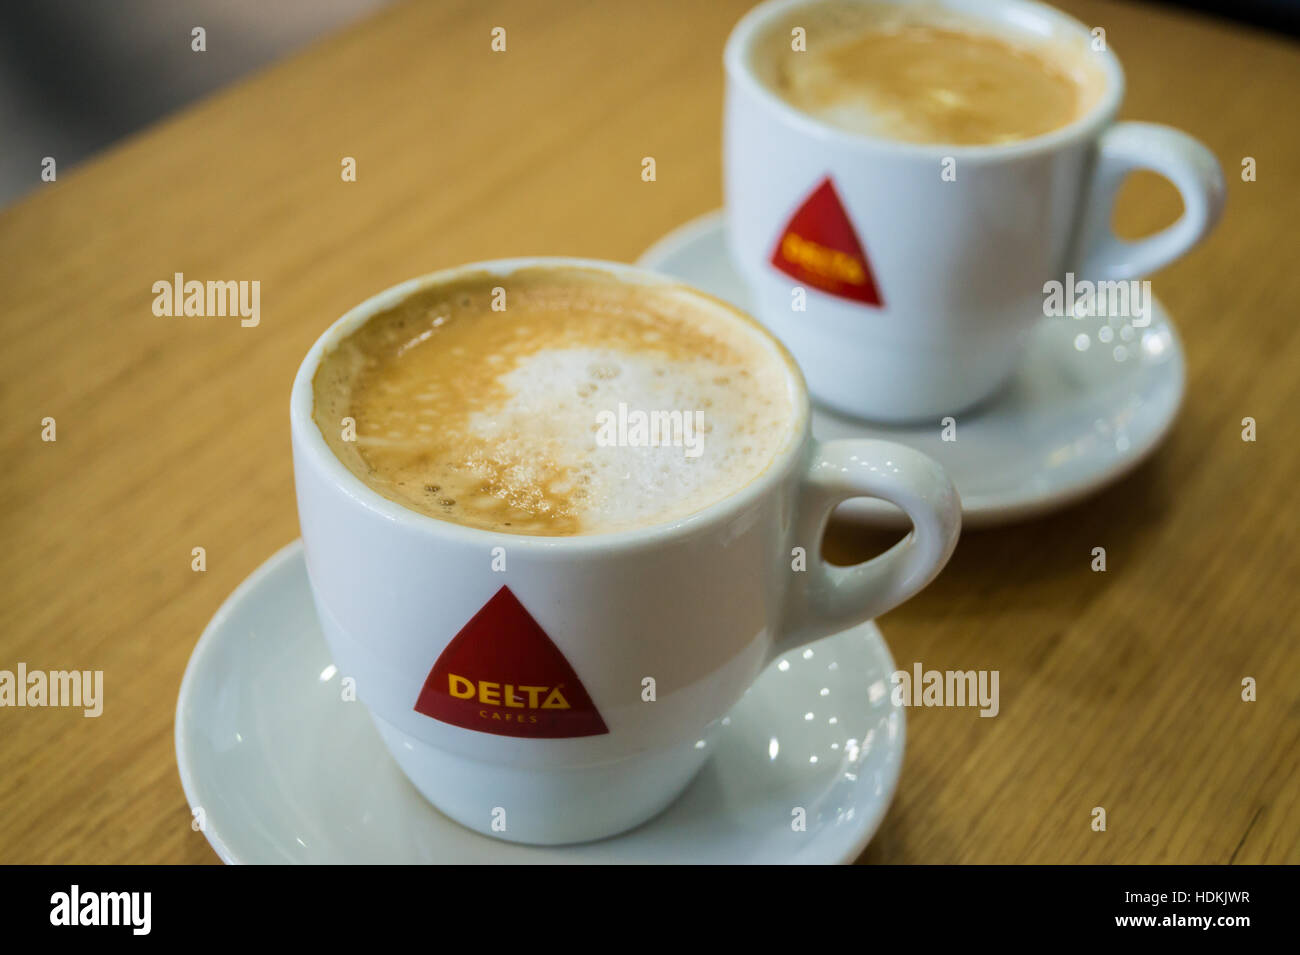 Cups of Delta meia de leite (coffee with milk), Porto (Oporto), Portugal  Stock Photo - Alamy